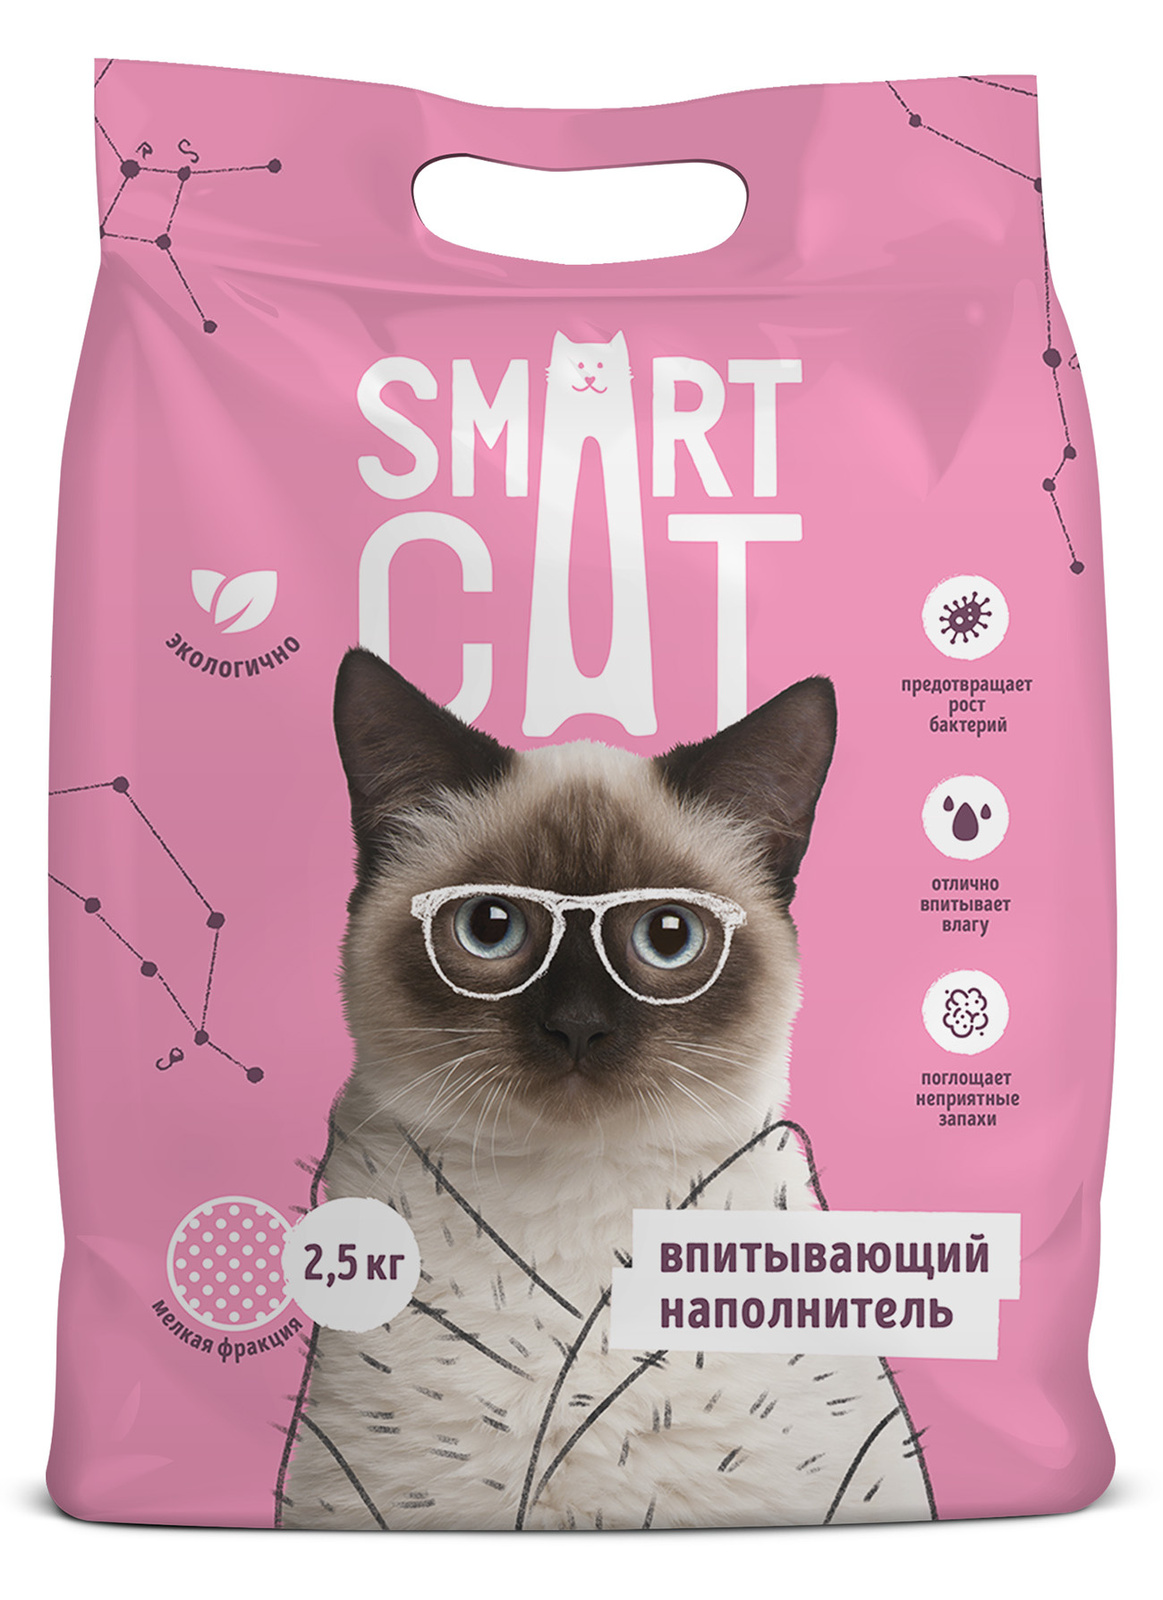 Smart Cat наполнитель Smart Cat наполнитель впитывающий наполнитель, мелкая фракция (2,5 кг) smart cat наполнитель smart cat наполнитель комкующийся наполнитель 10 кг